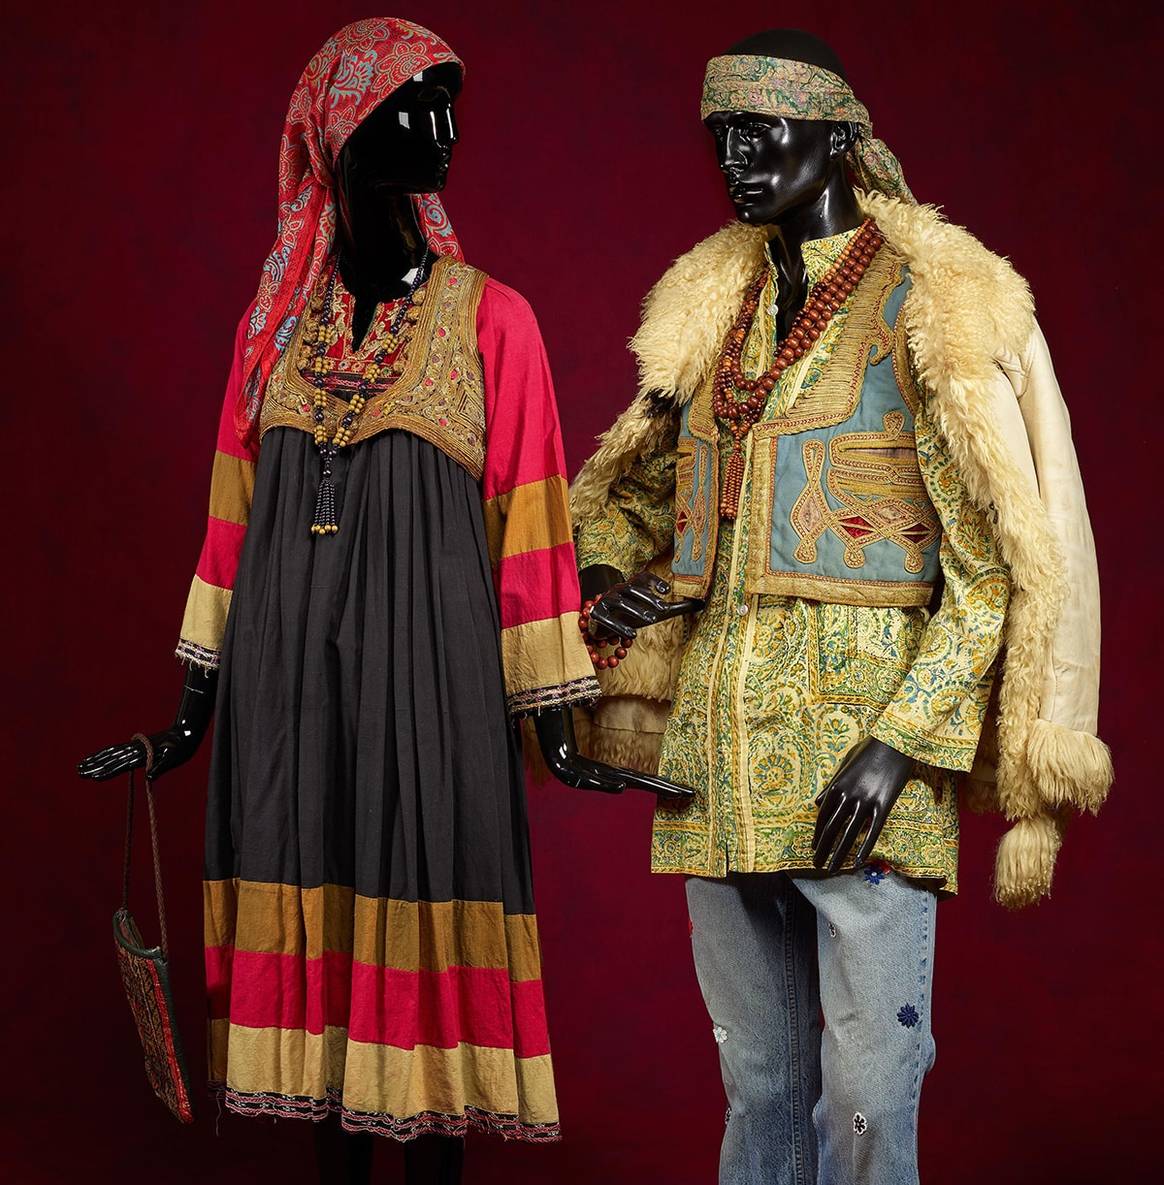 Hippie outfits, samengesteld uit kleding
uit onder andere Afghanistan, India en West-Europa, jaren 1960, Kunstmuseum
Den Haag. Foto: Alice de Groot.